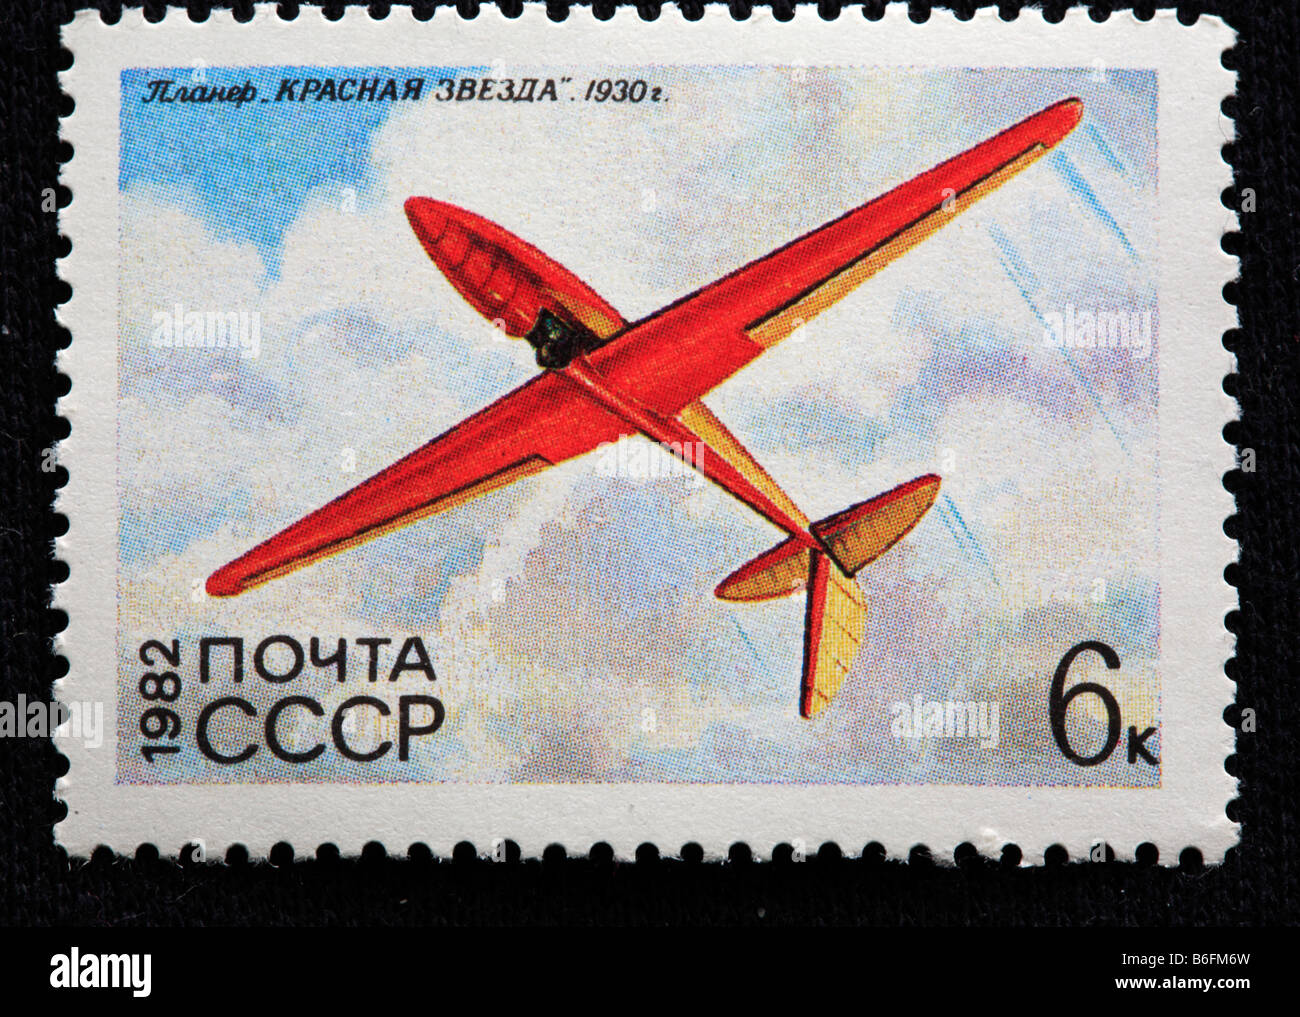 Geschichte der Luftfahrt, russische Segelflugzeug "Roter Stern" (1930), Porto Stempel, UdSSR, 1982 Stockfoto